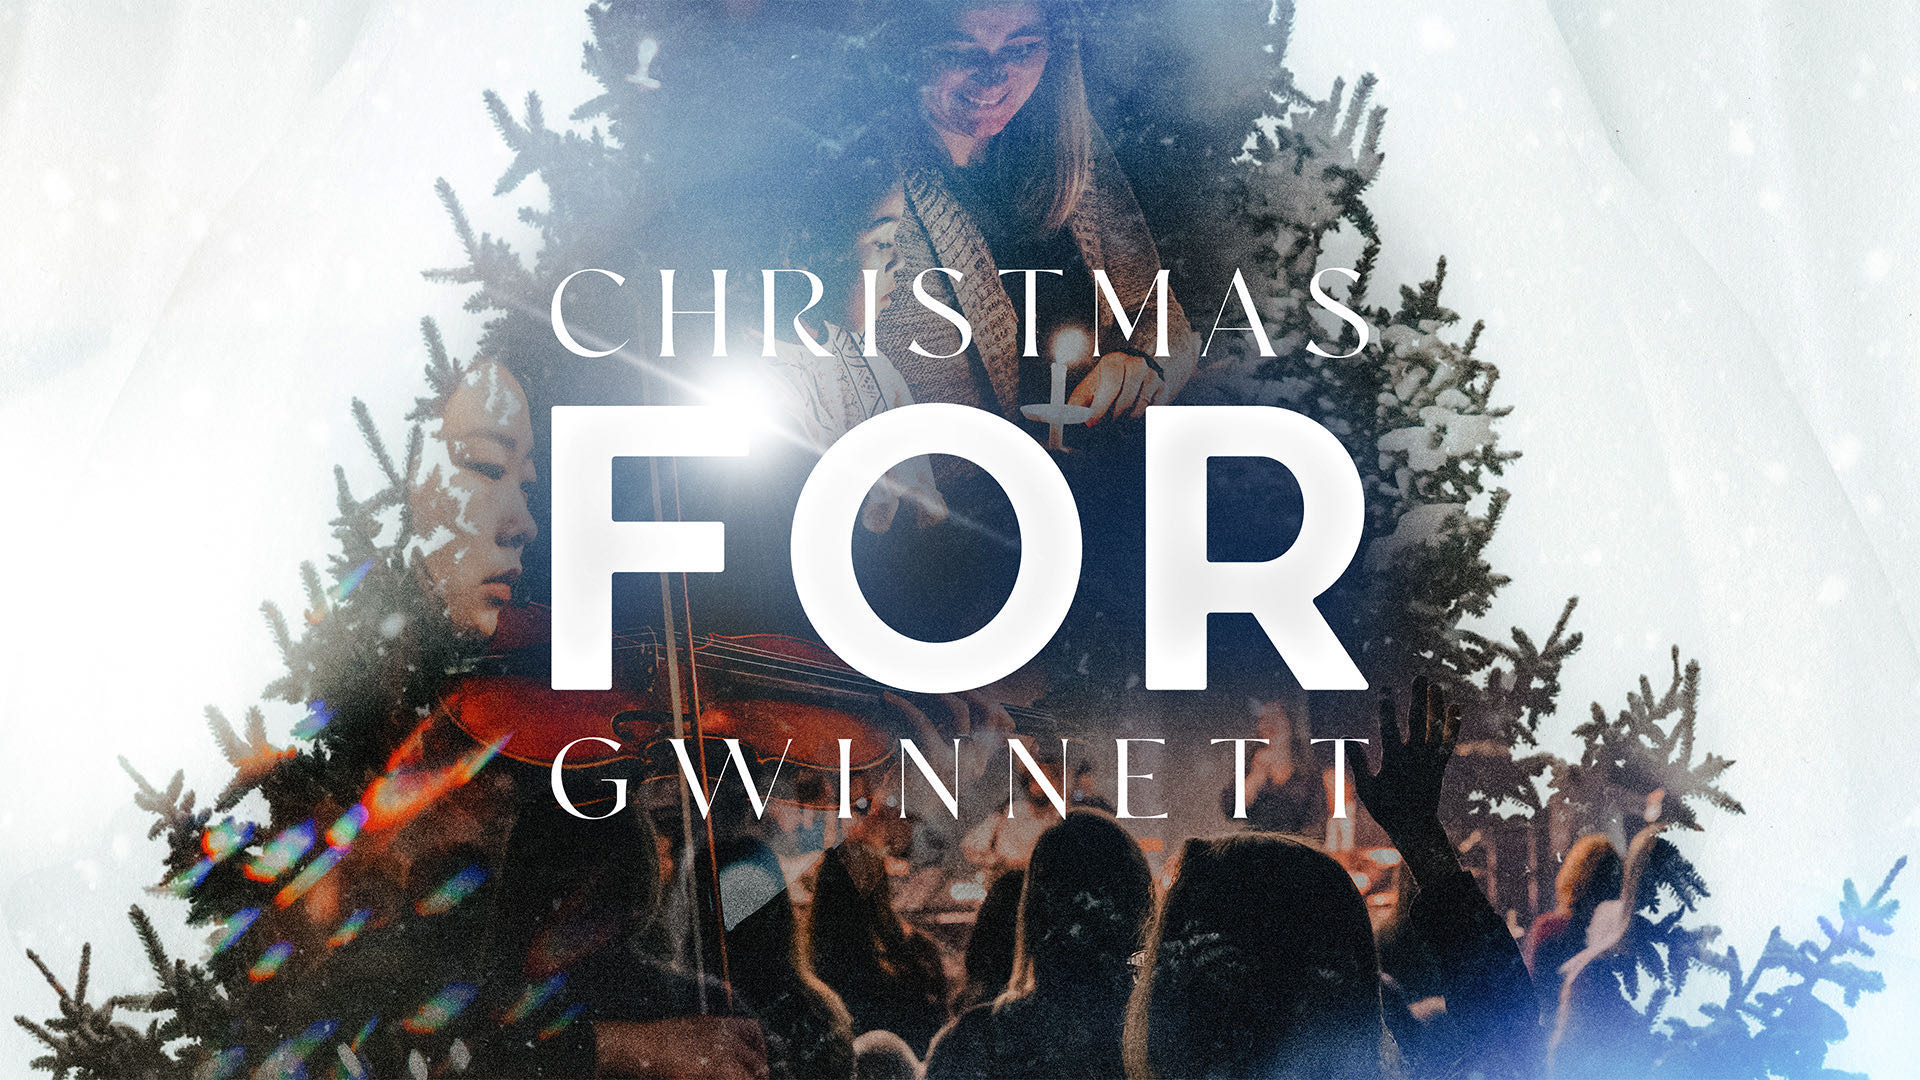 Christmas FOR Gwinnett